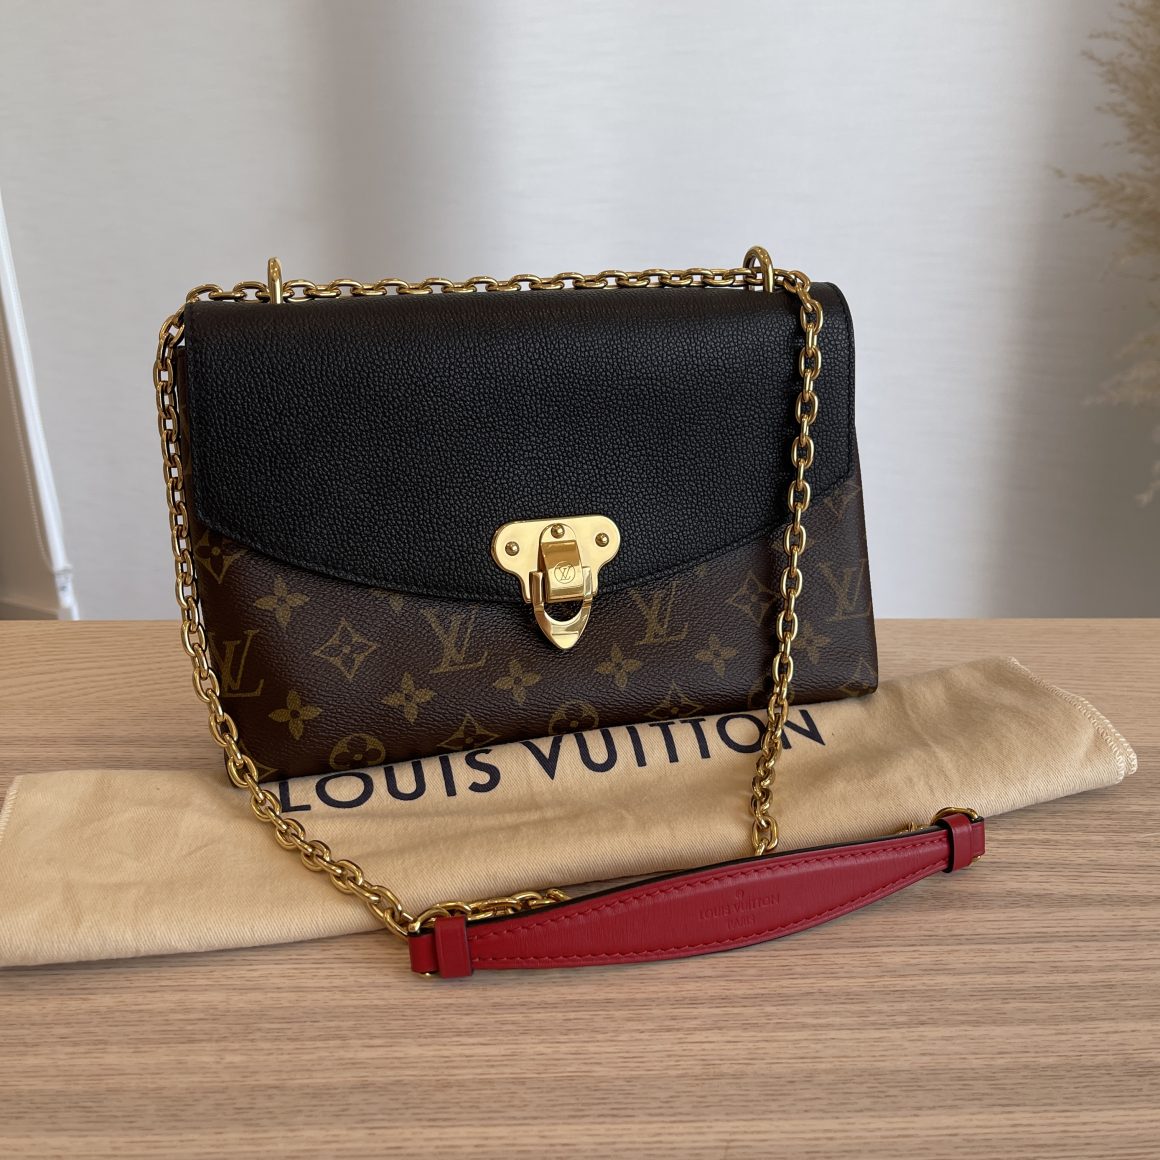 Saint placide leather handbag Louis Vuitton Black in Leather - 13922499